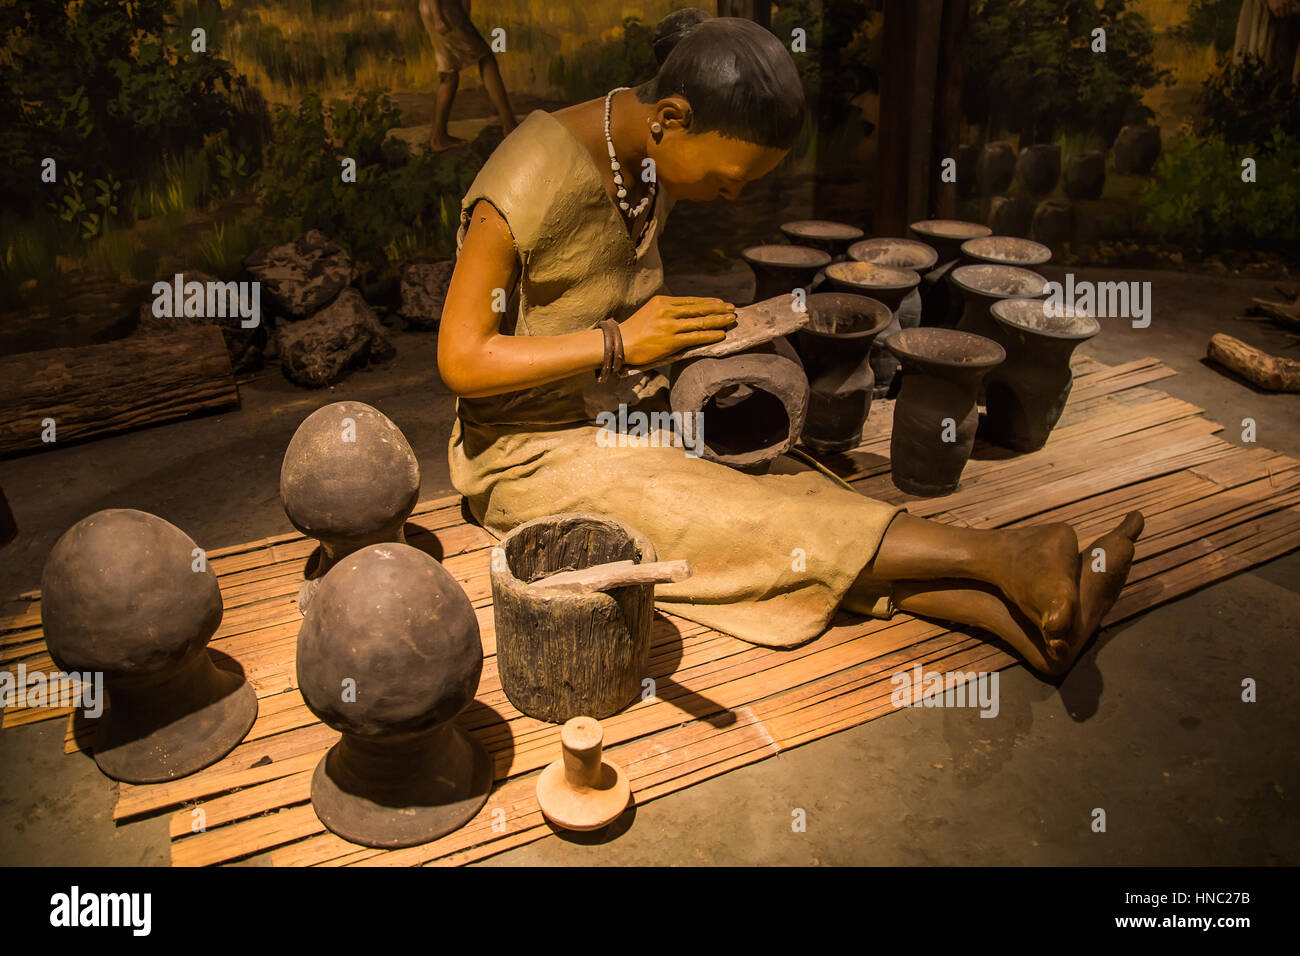 Ban Chiang National Museum besteht aus Antiquitäten, Keramik und alles verbunden mit der alten Kultur von Ban Chiang, einschließlich alte Werkzeuge, hou Stockfoto